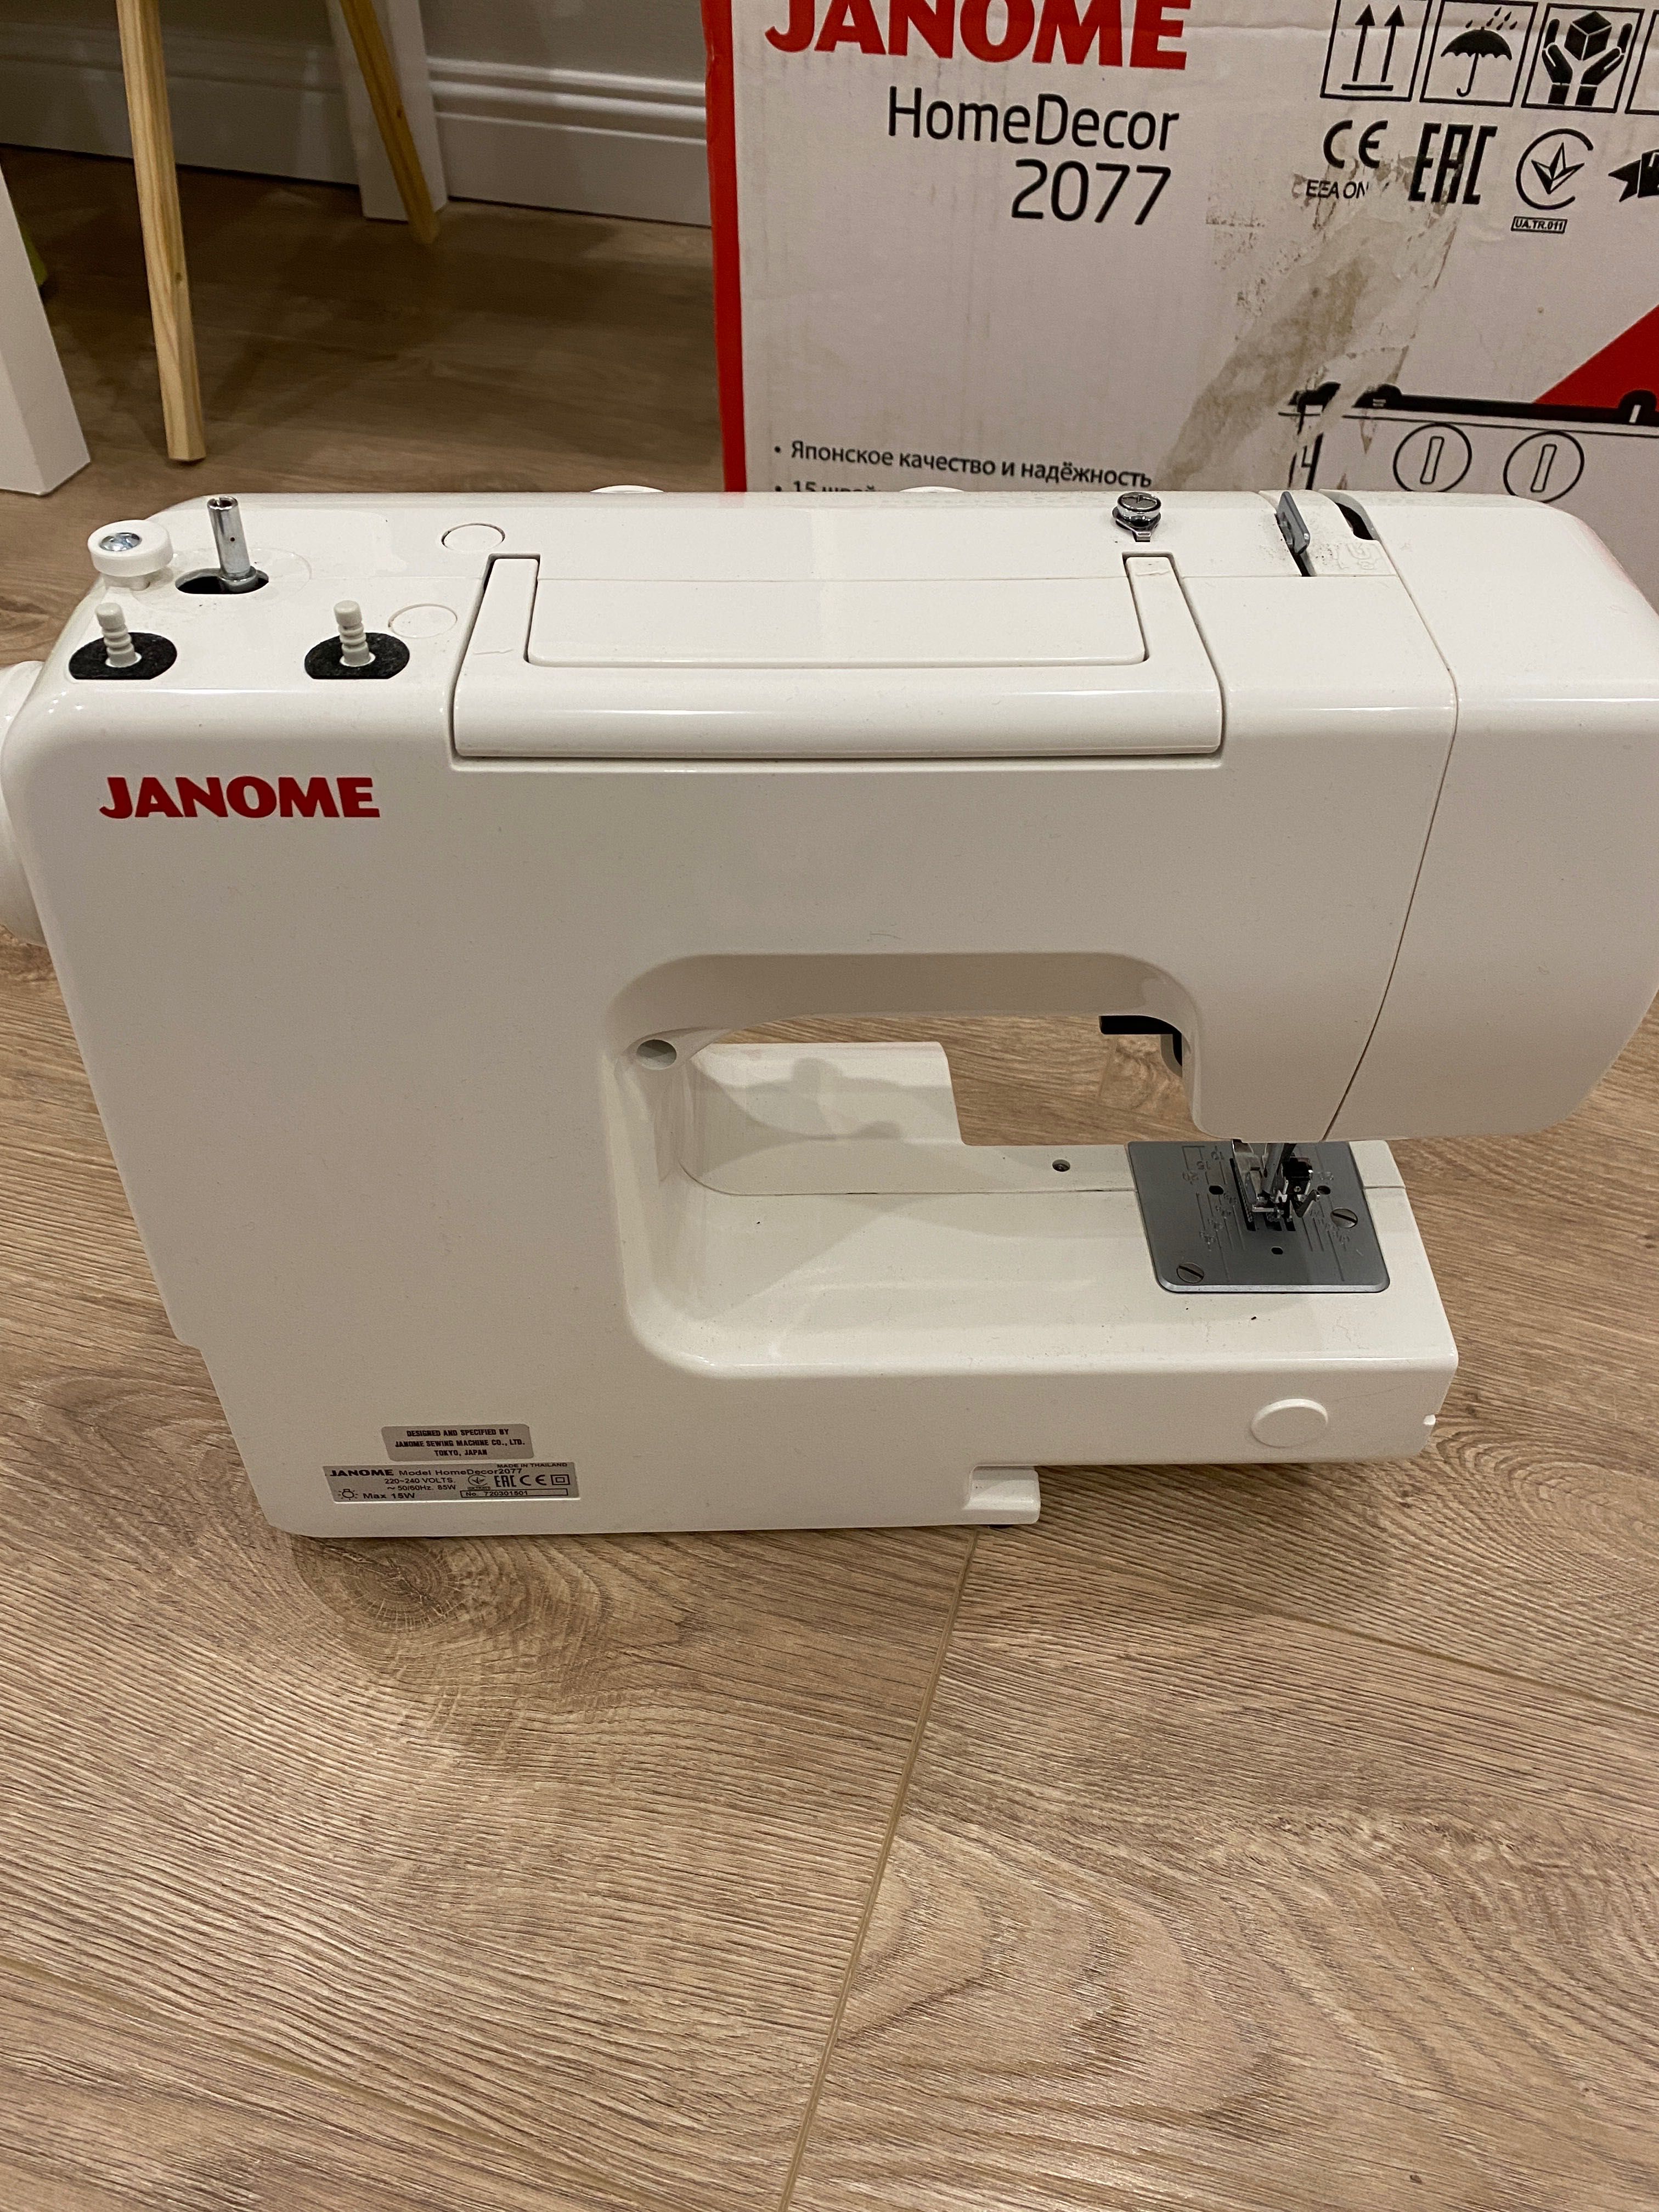 Продам швейную машинку Janome